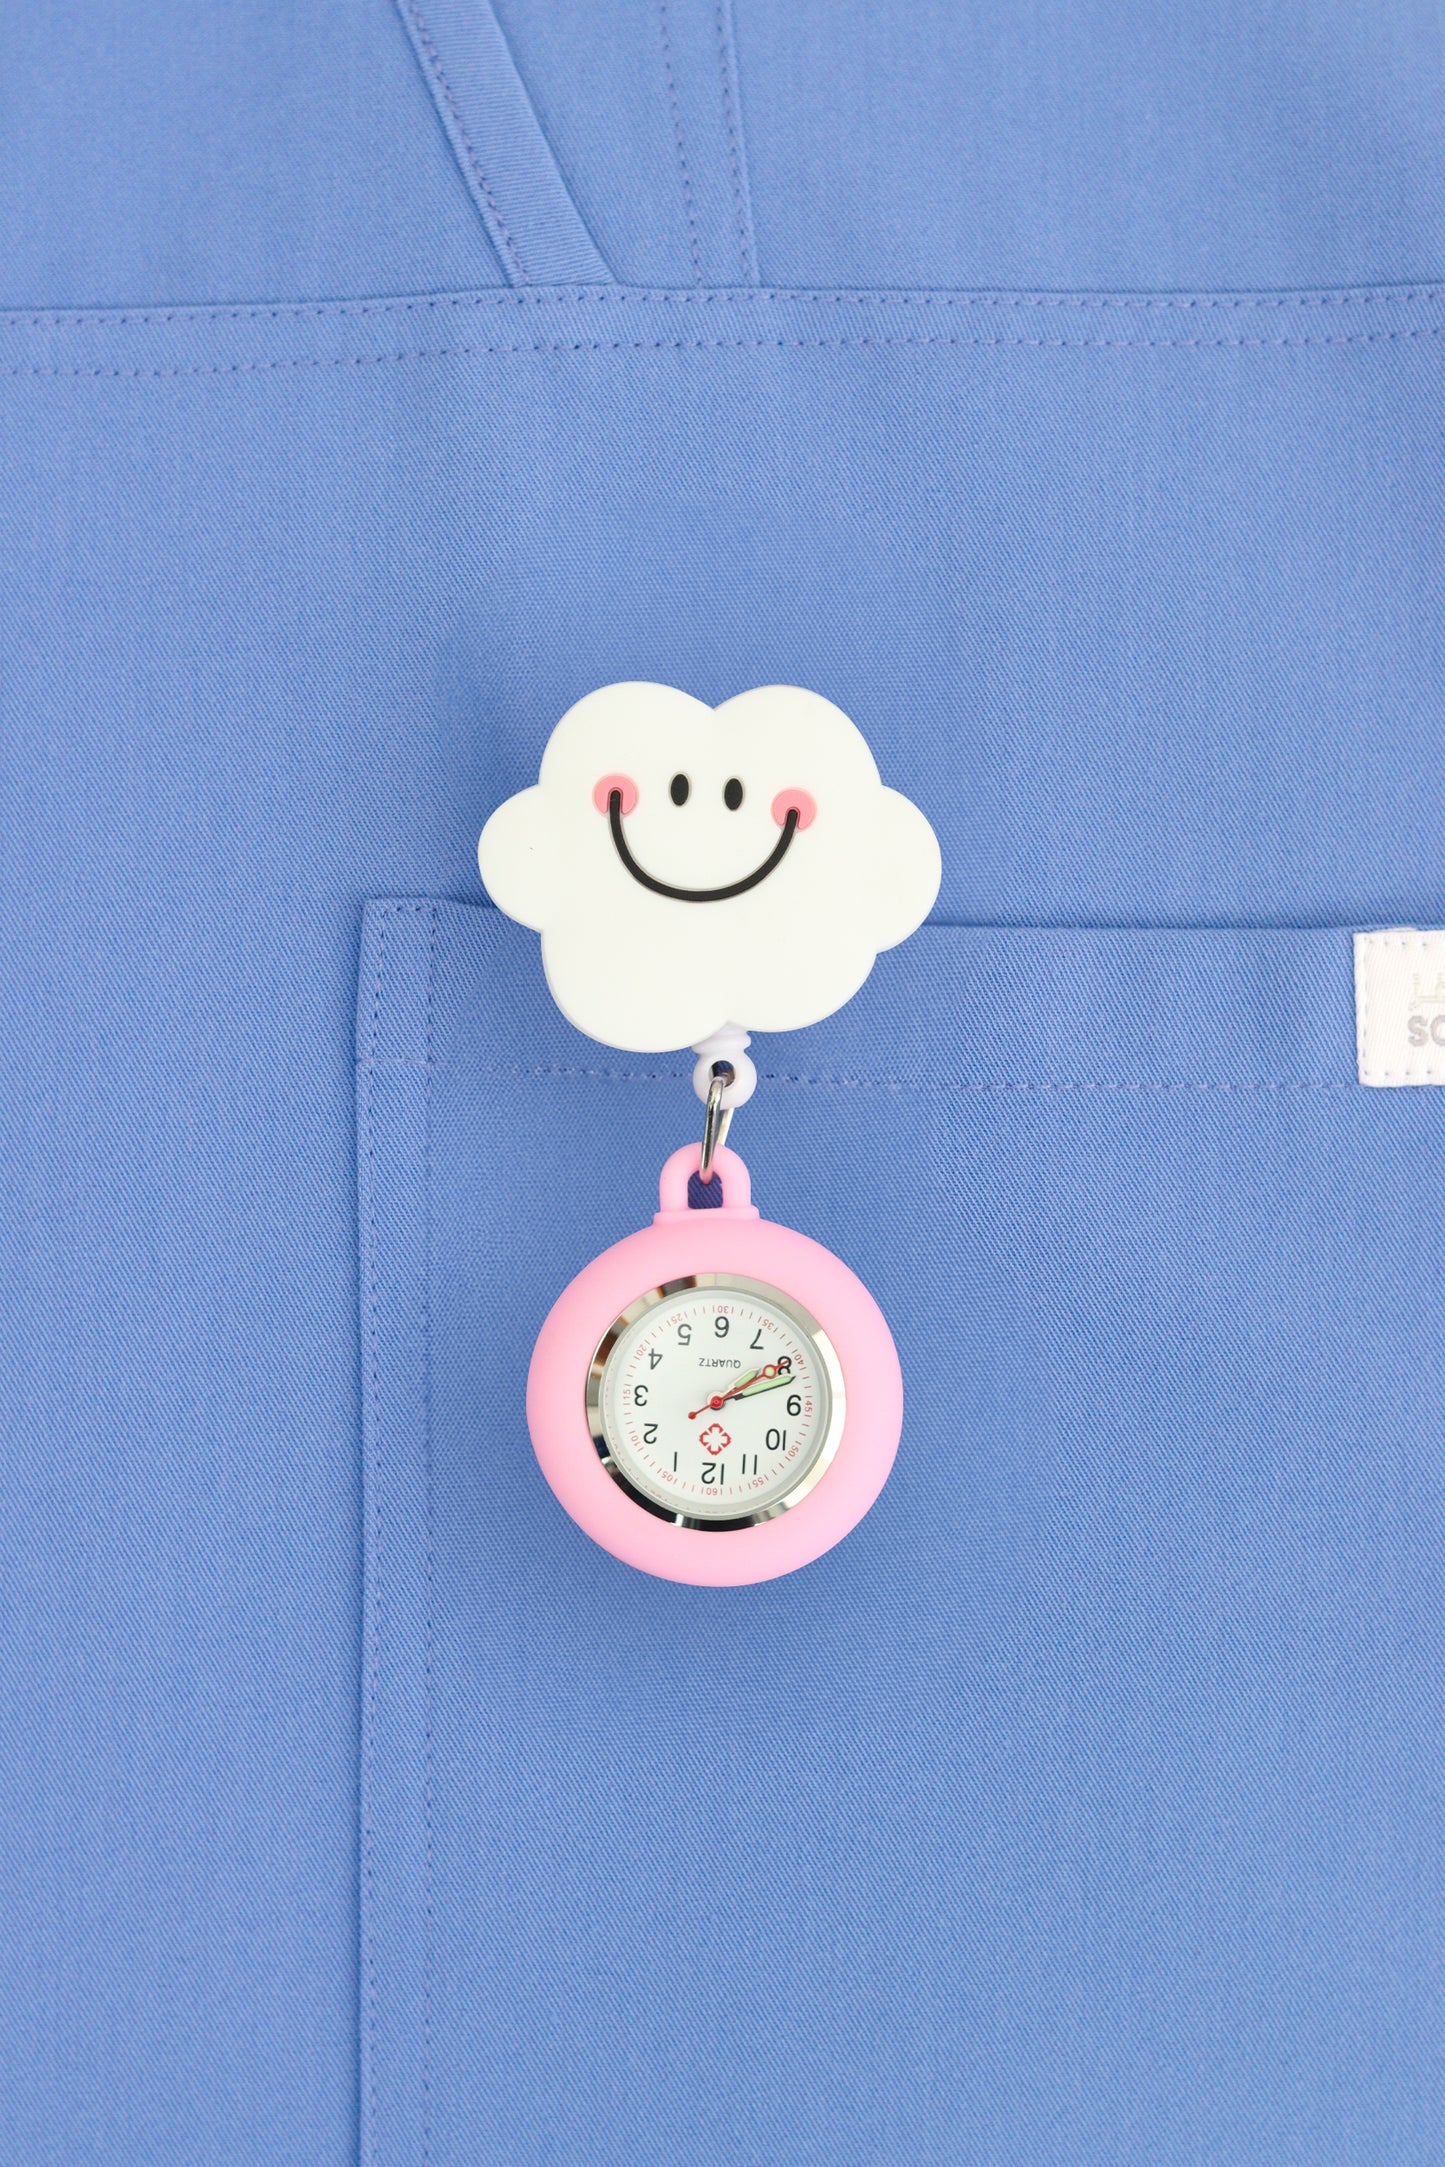 Nurse Pocket Silicon Fob Clip Watch - Happy Cloud